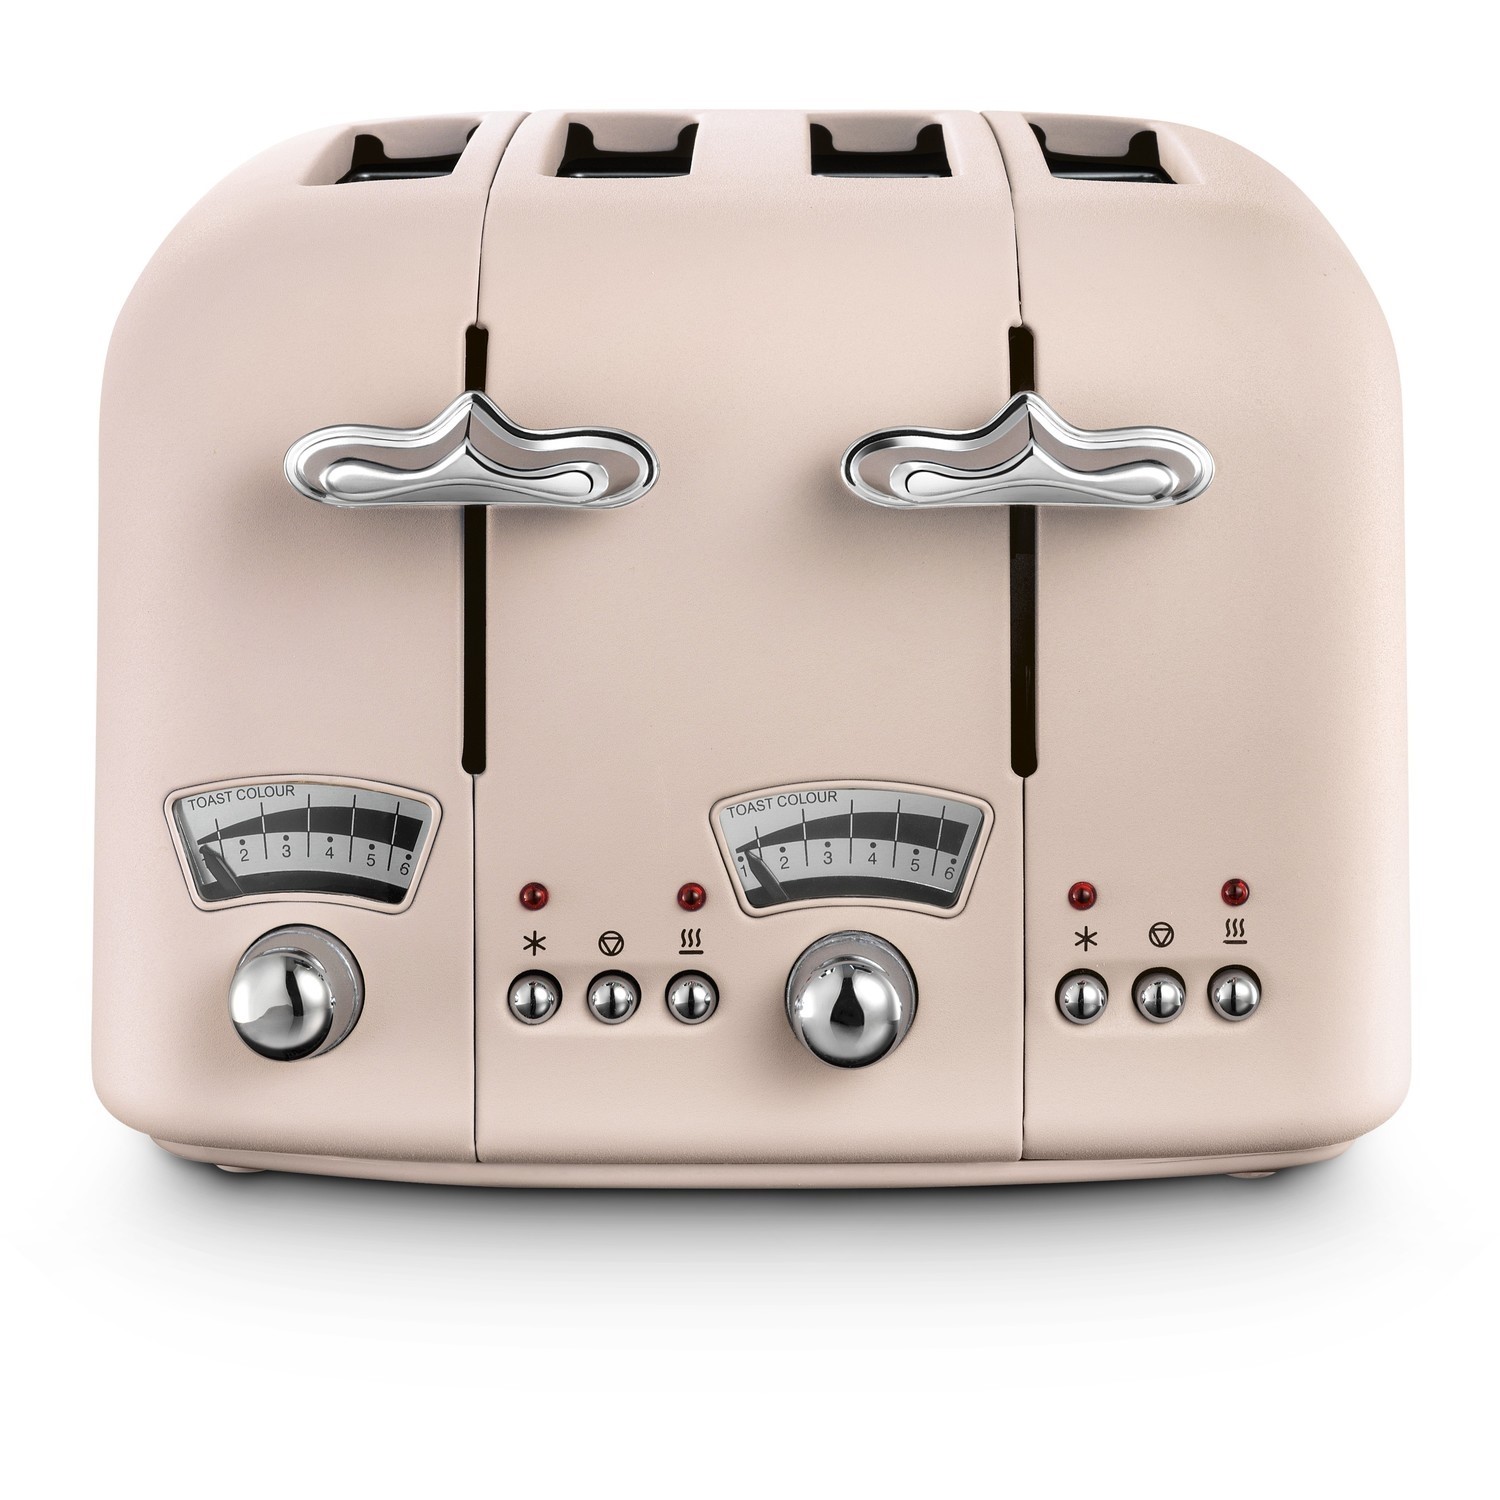 DeLonghi Argento Flora 4 Slice Toaster - Pink